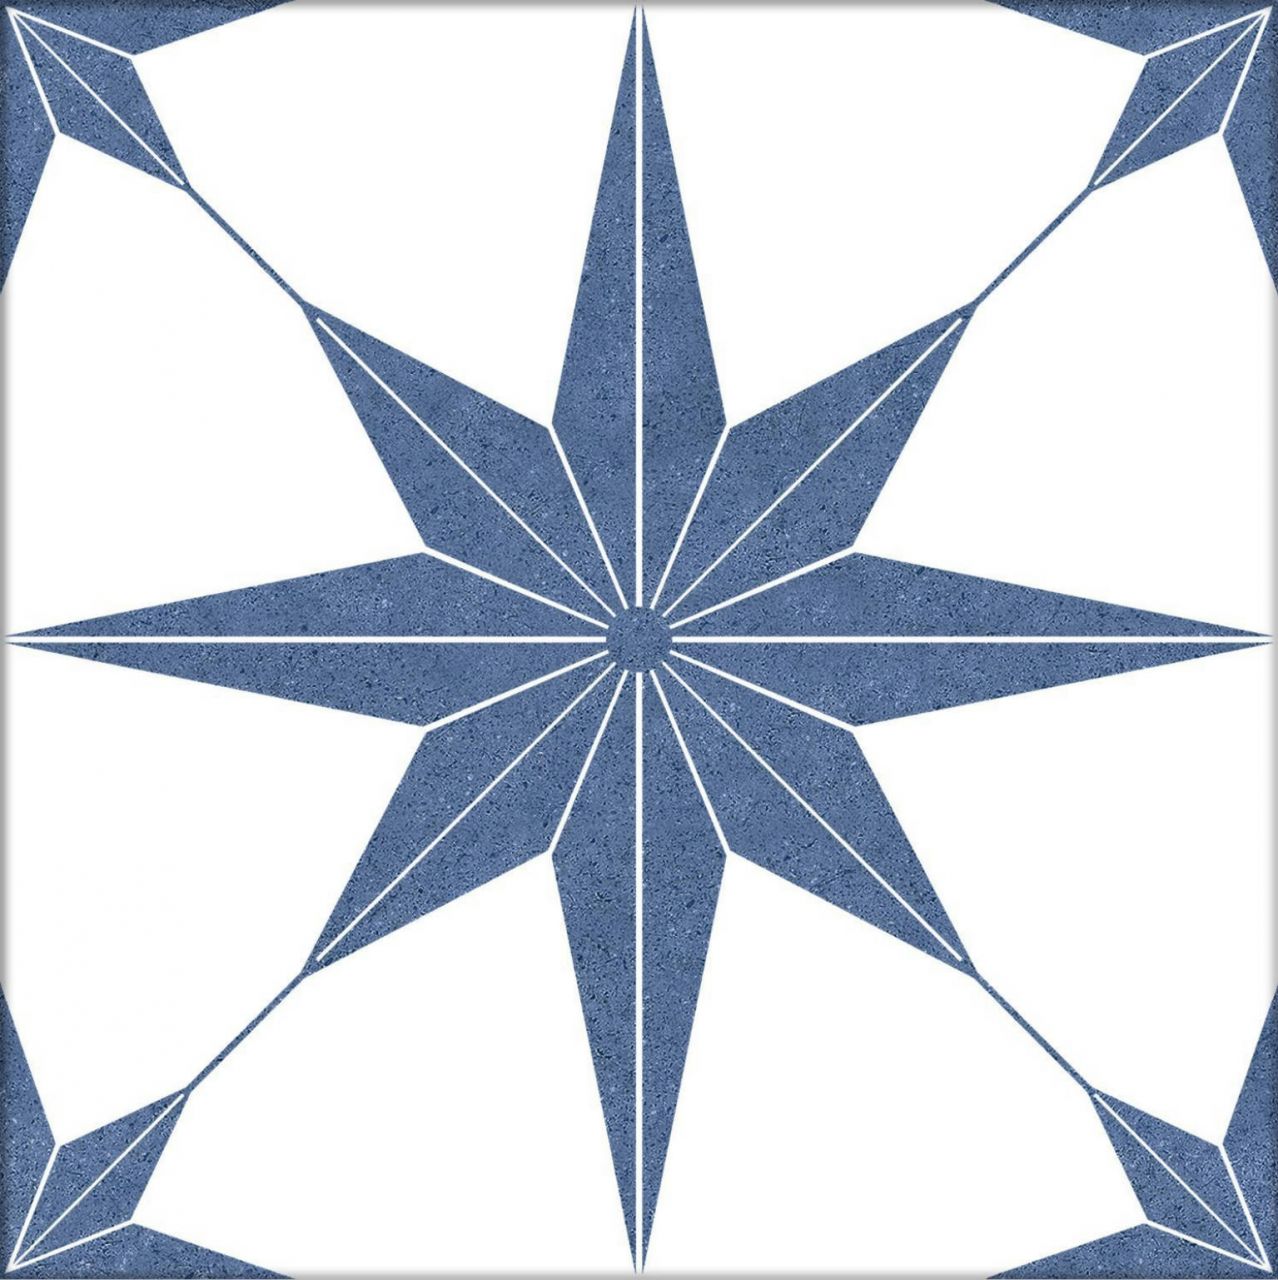 25x25 Co Stella Azul kék csillag mintás design dekor járólap és csempe